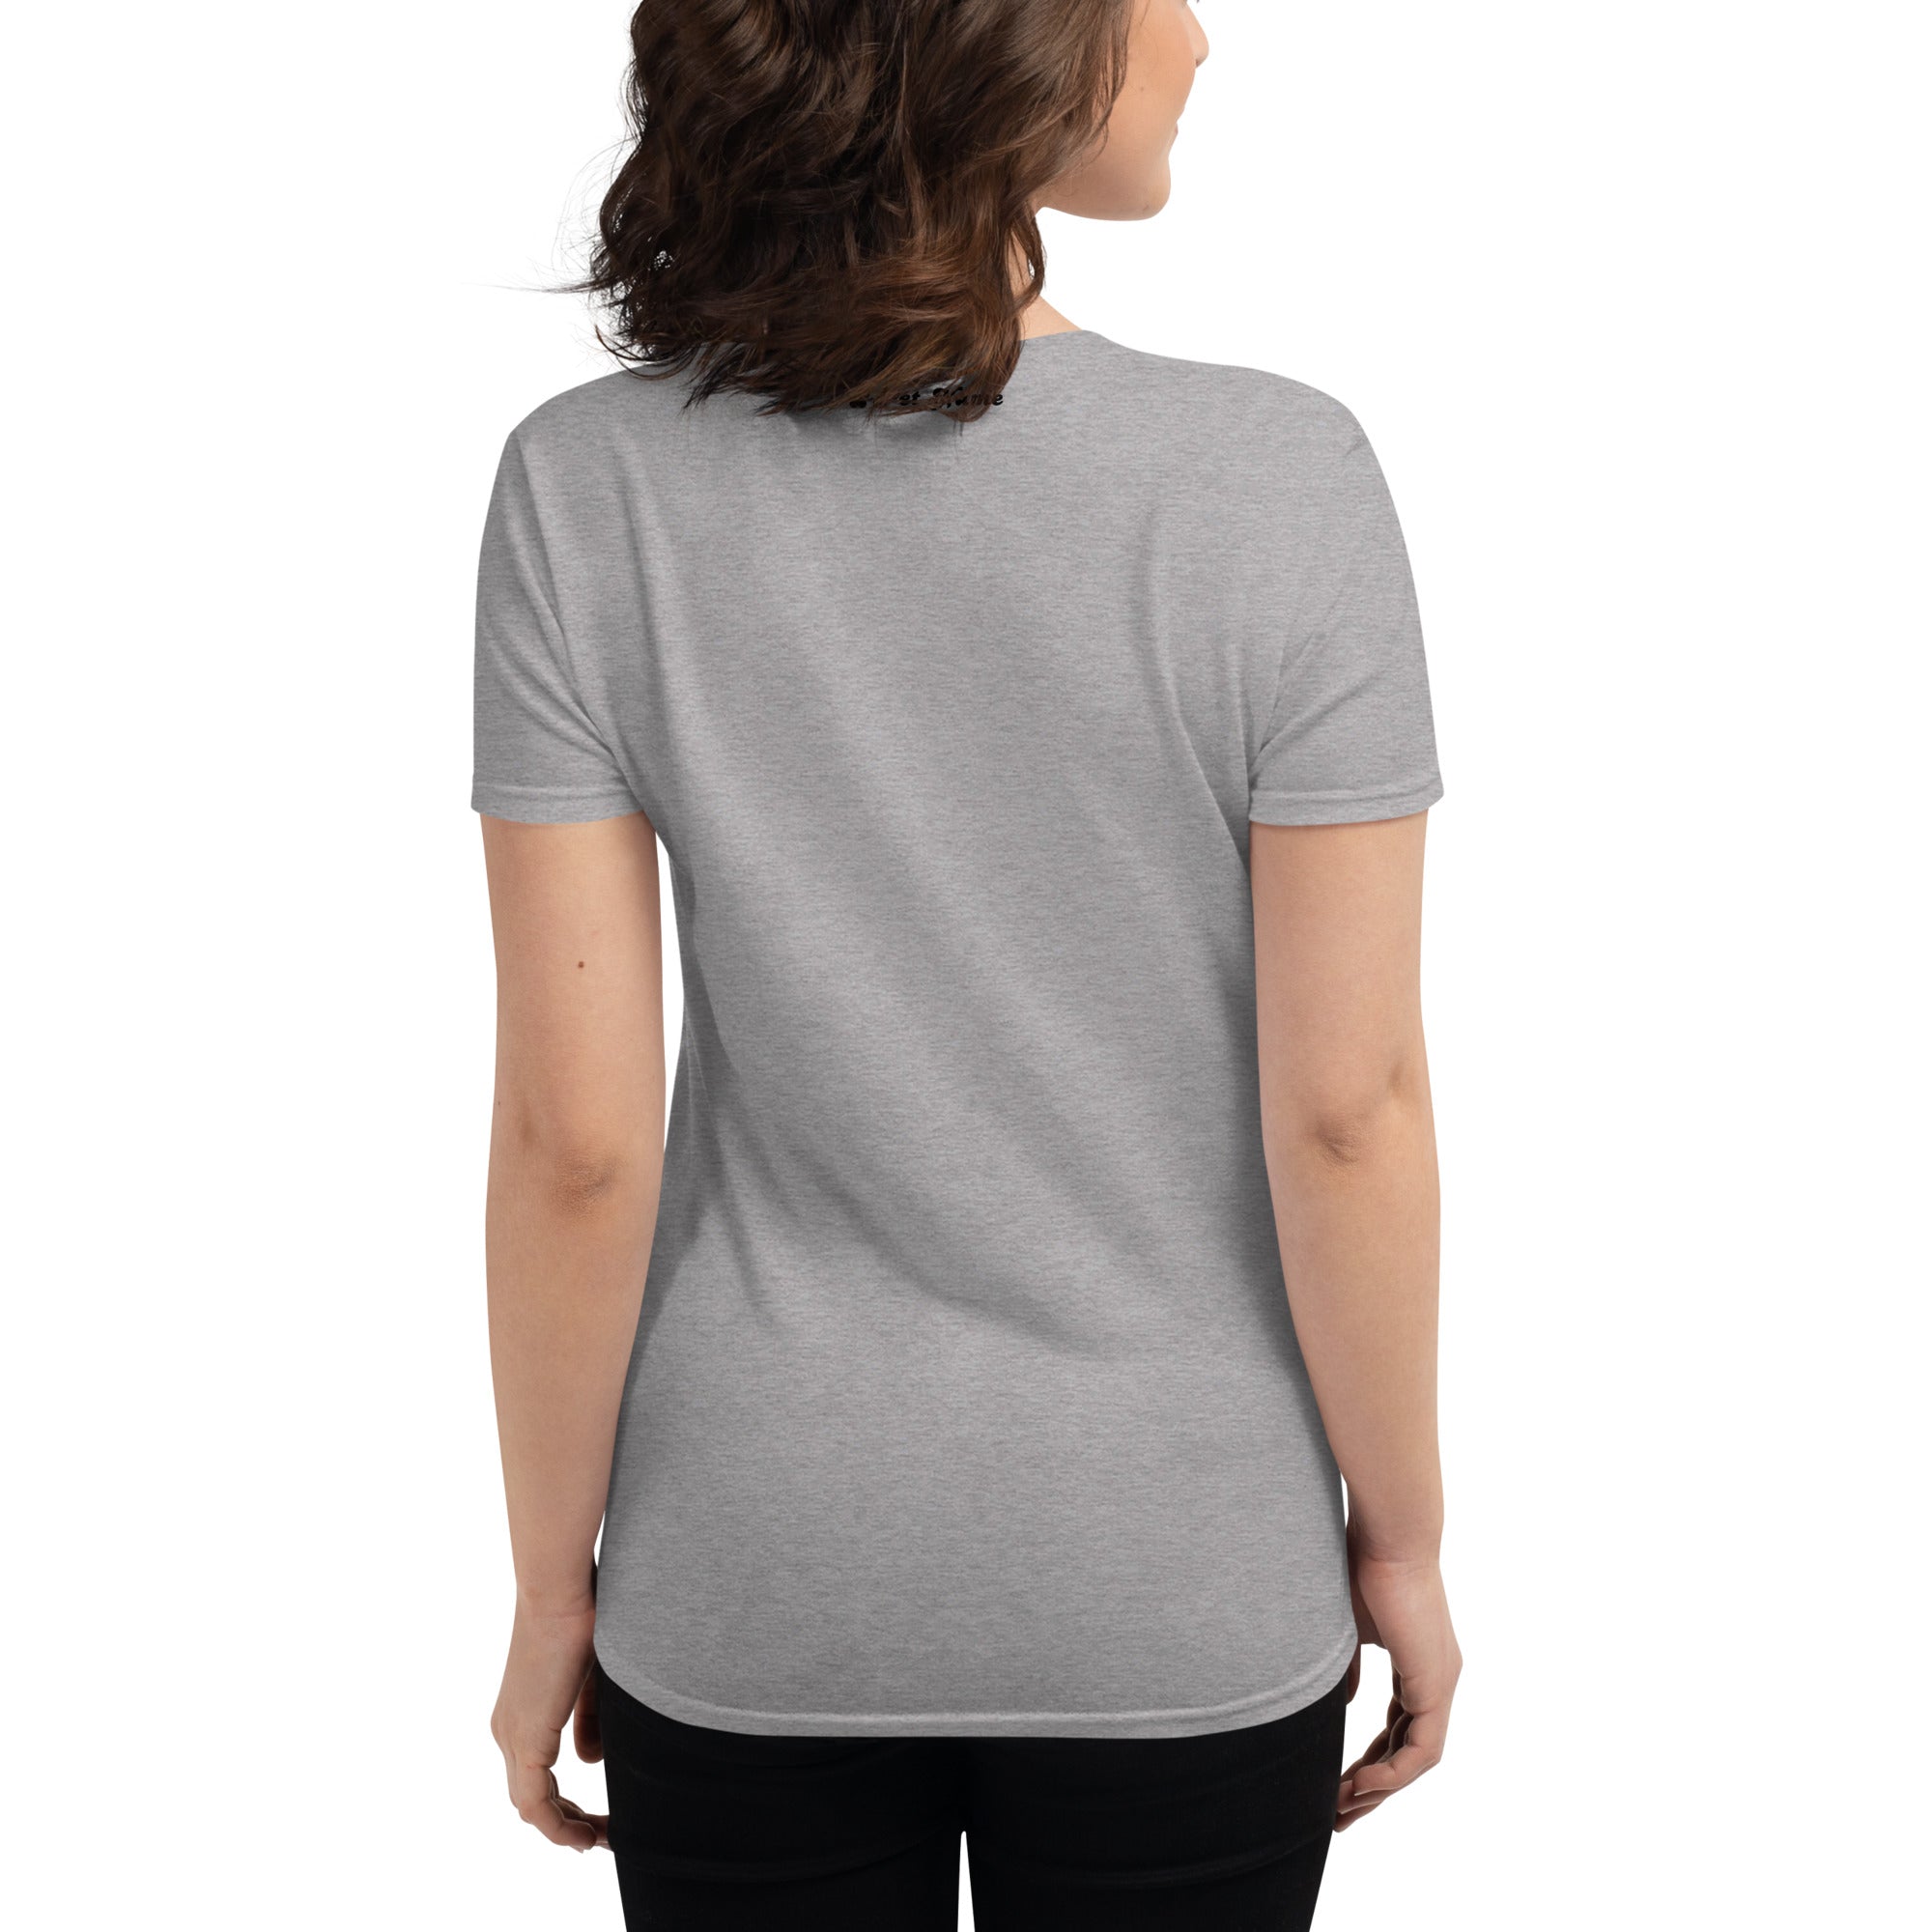 Boston Terrier Women's short sleeve t-shirt